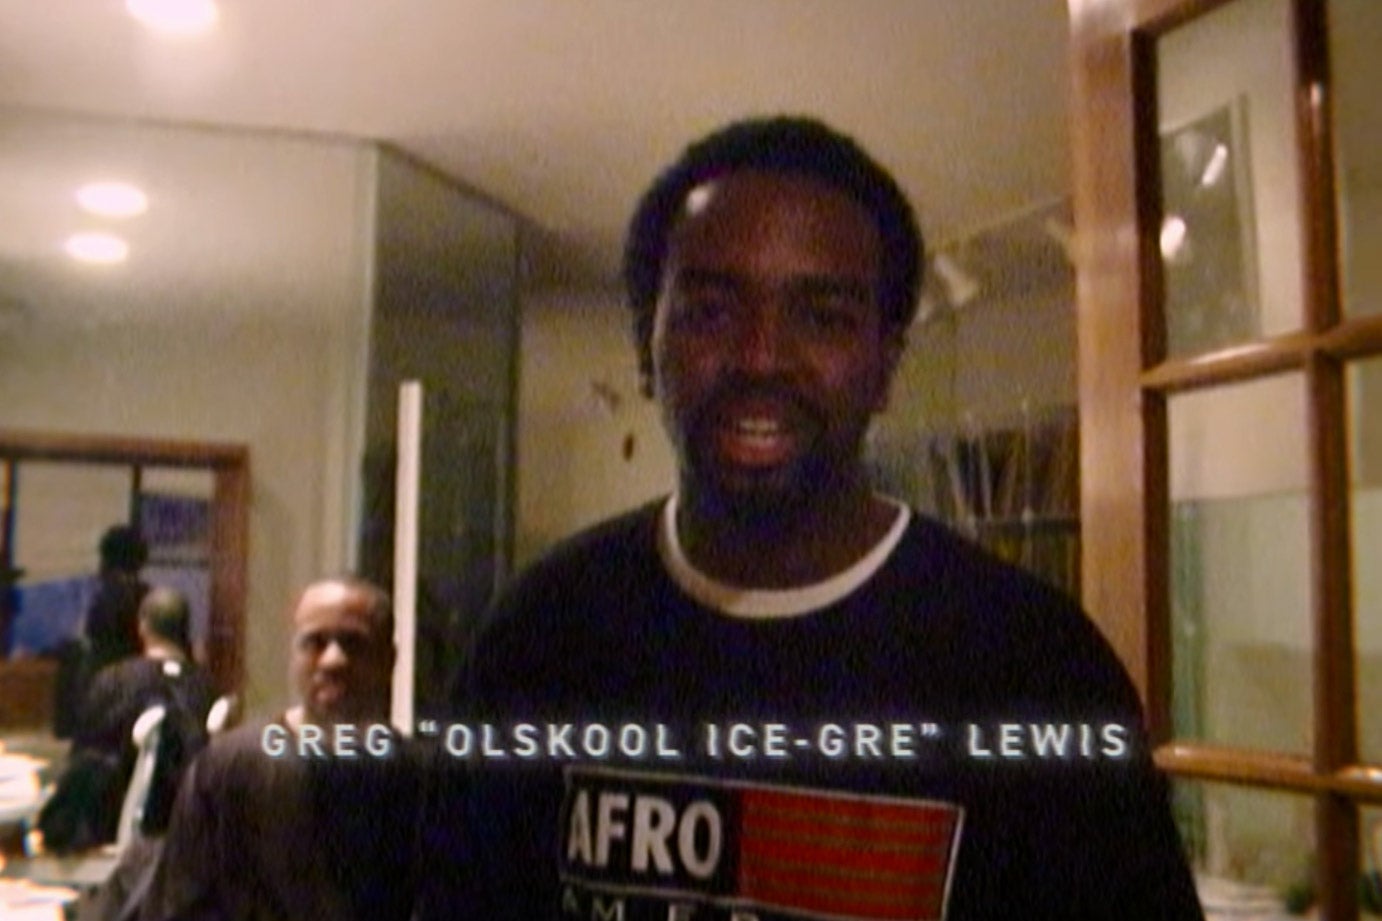 Greg “Olskool Ice-Gre” Lewis